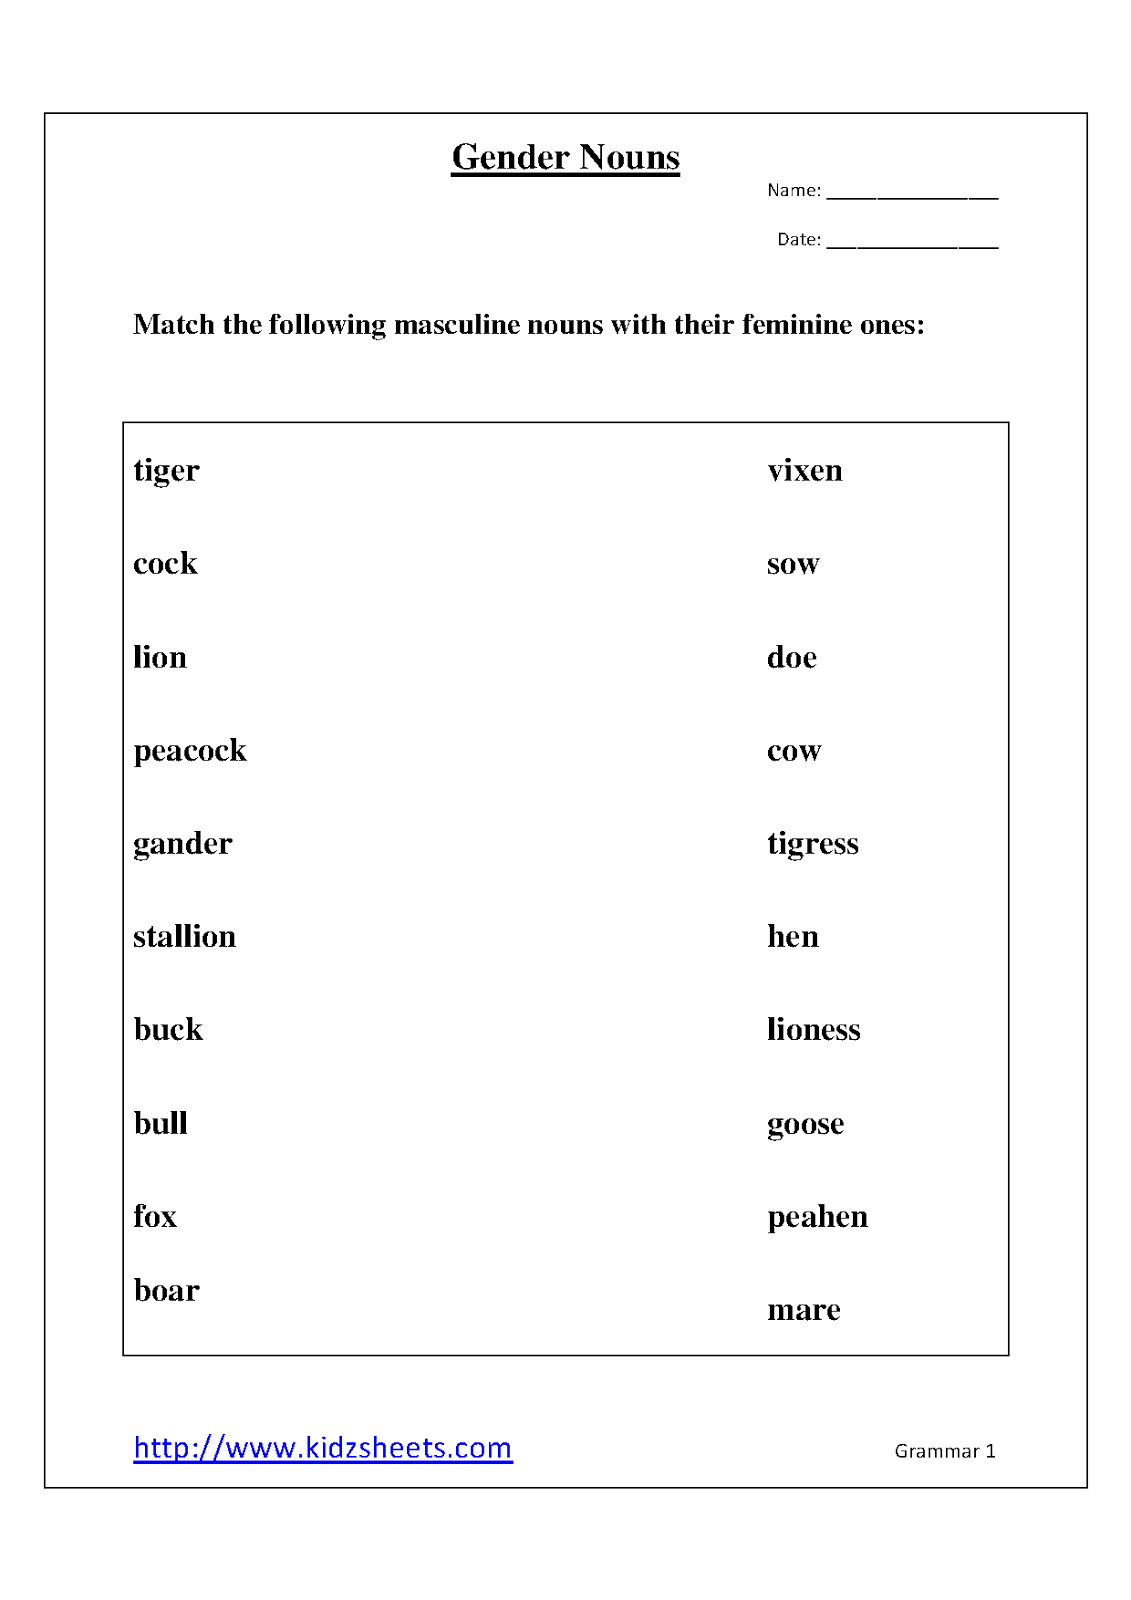 Kidz Worksheets: Gender Nouns Worksheet1 printable worksheets, learning, worksheets for teachers, math worksheets, and education Worksheets Nouns 2 1600 x 1131